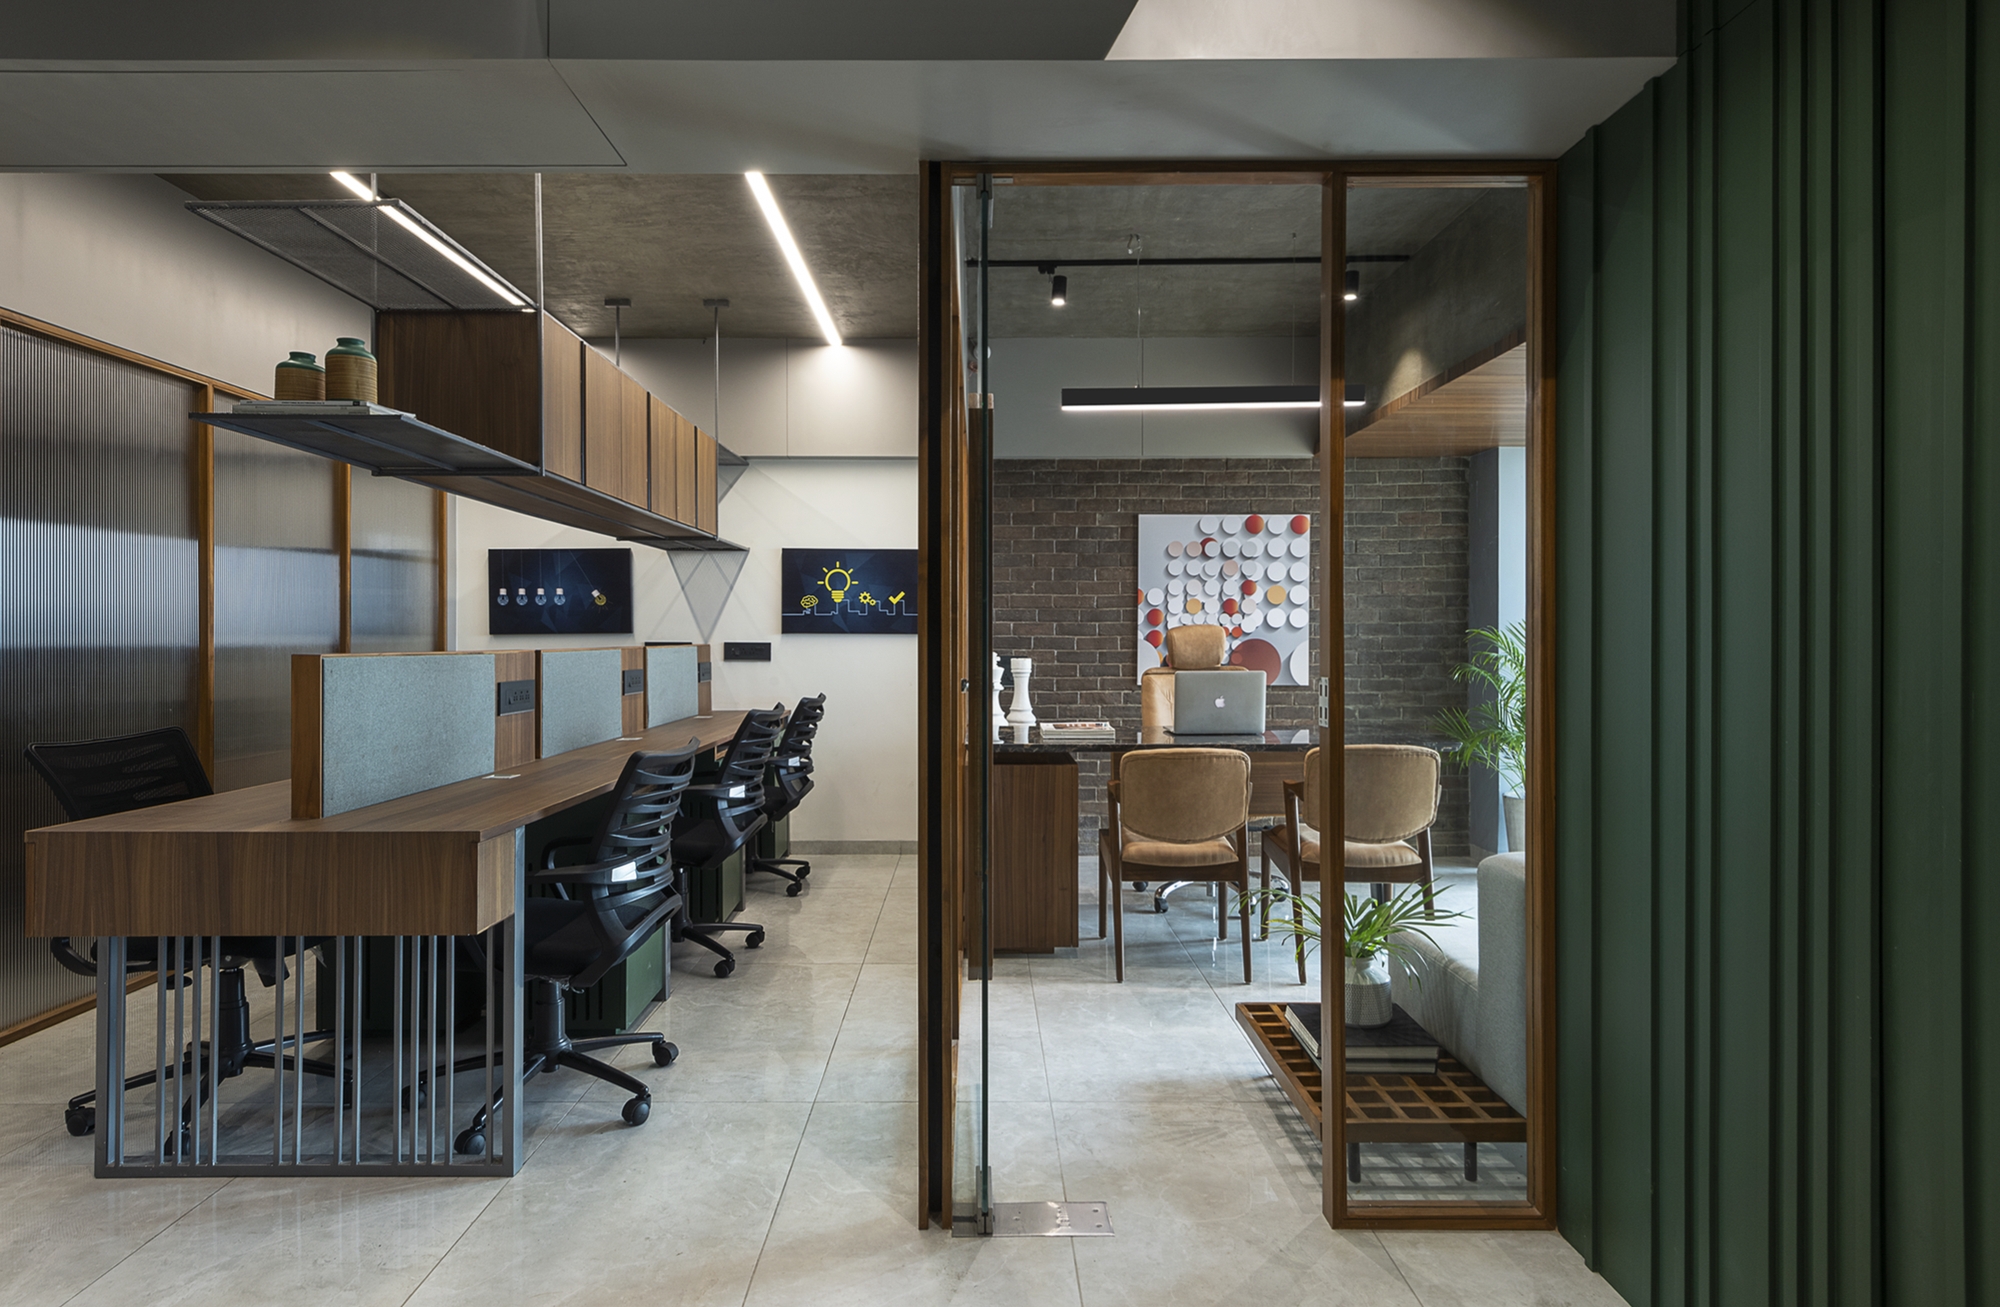 图片[6]|Jitendra电气办公室——艾哈迈达巴德|ART-Arrakis | 建筑室内设计的创新与灵感